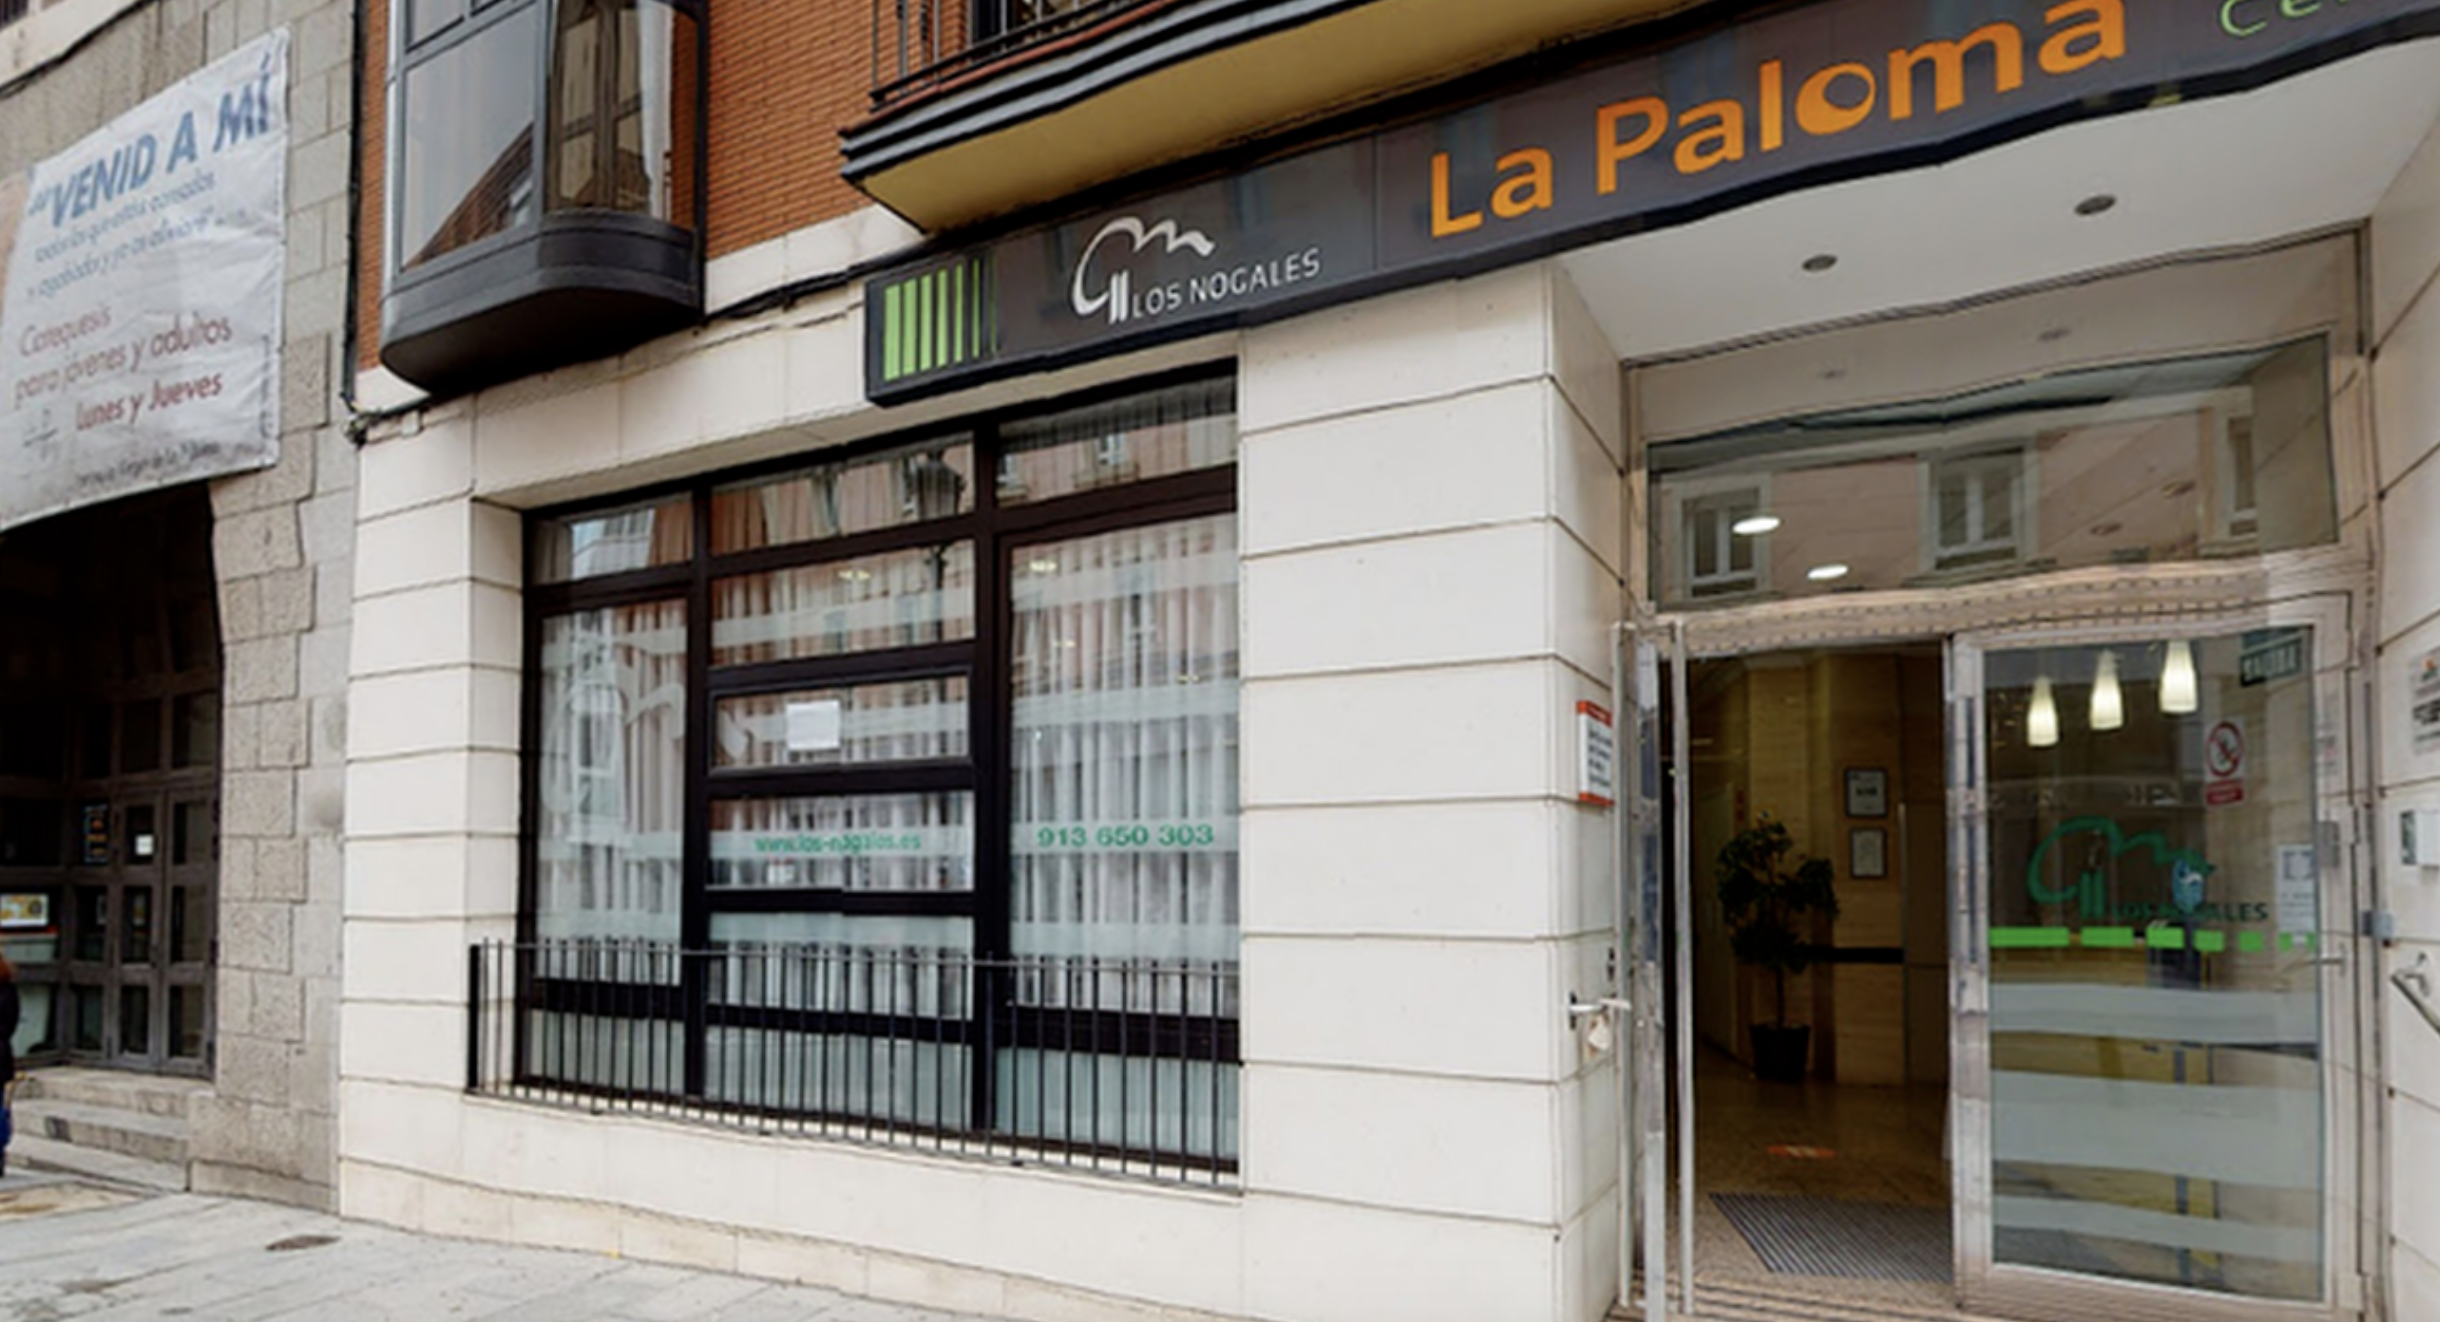 La residencia de Madrid afectada en enero por una explosión de gas se convertirá en un colegio mayor